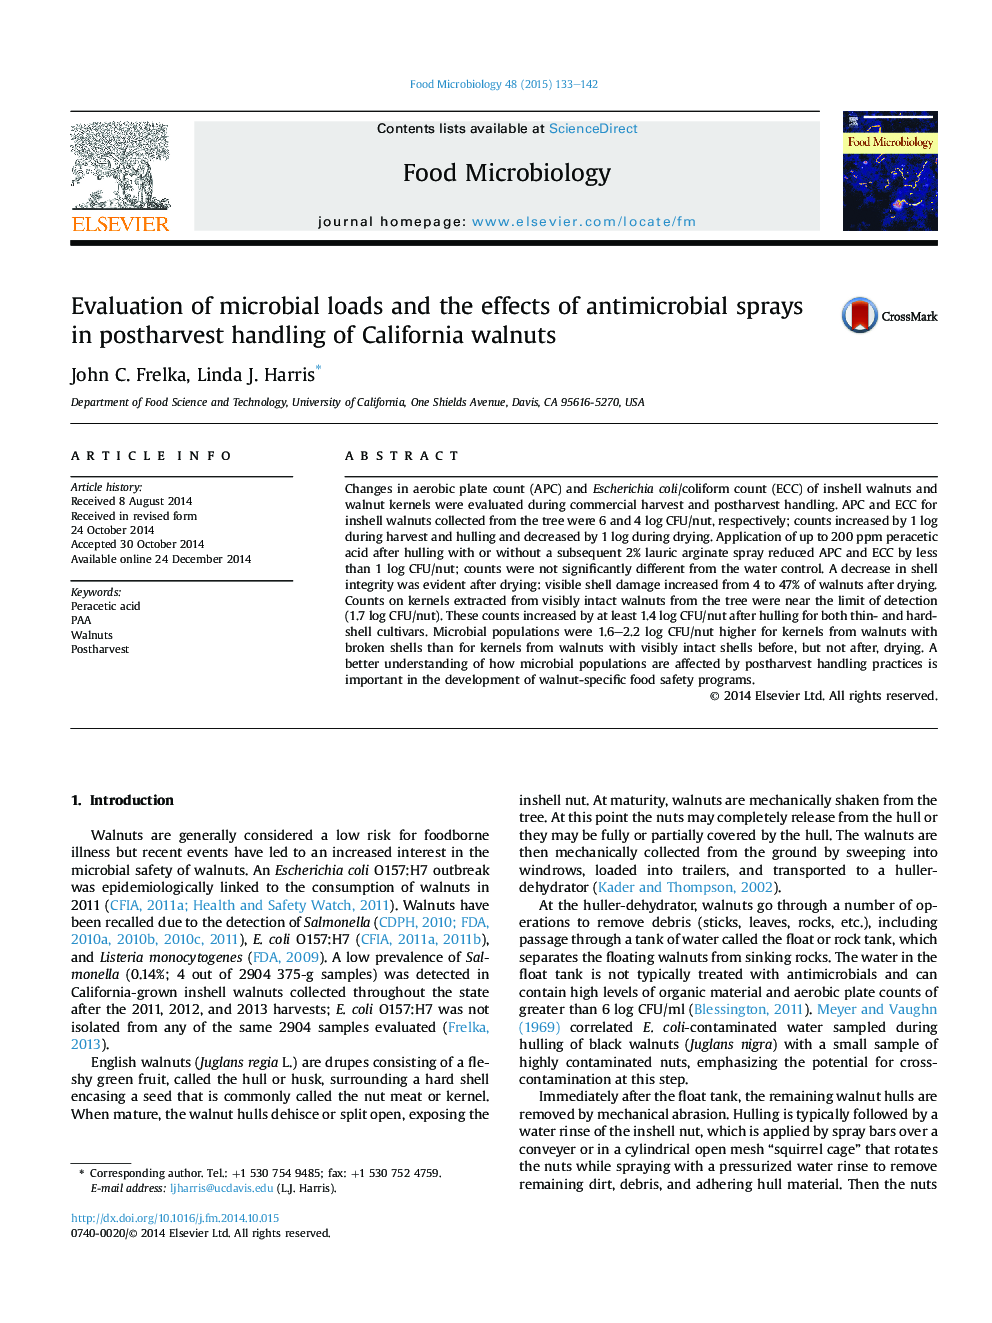 ارزیابی بارهای میکروبی و اثرات ضد اسپاسم ضد میکروبی در دوران پس از زایمان از گردو کالیفرنیا 